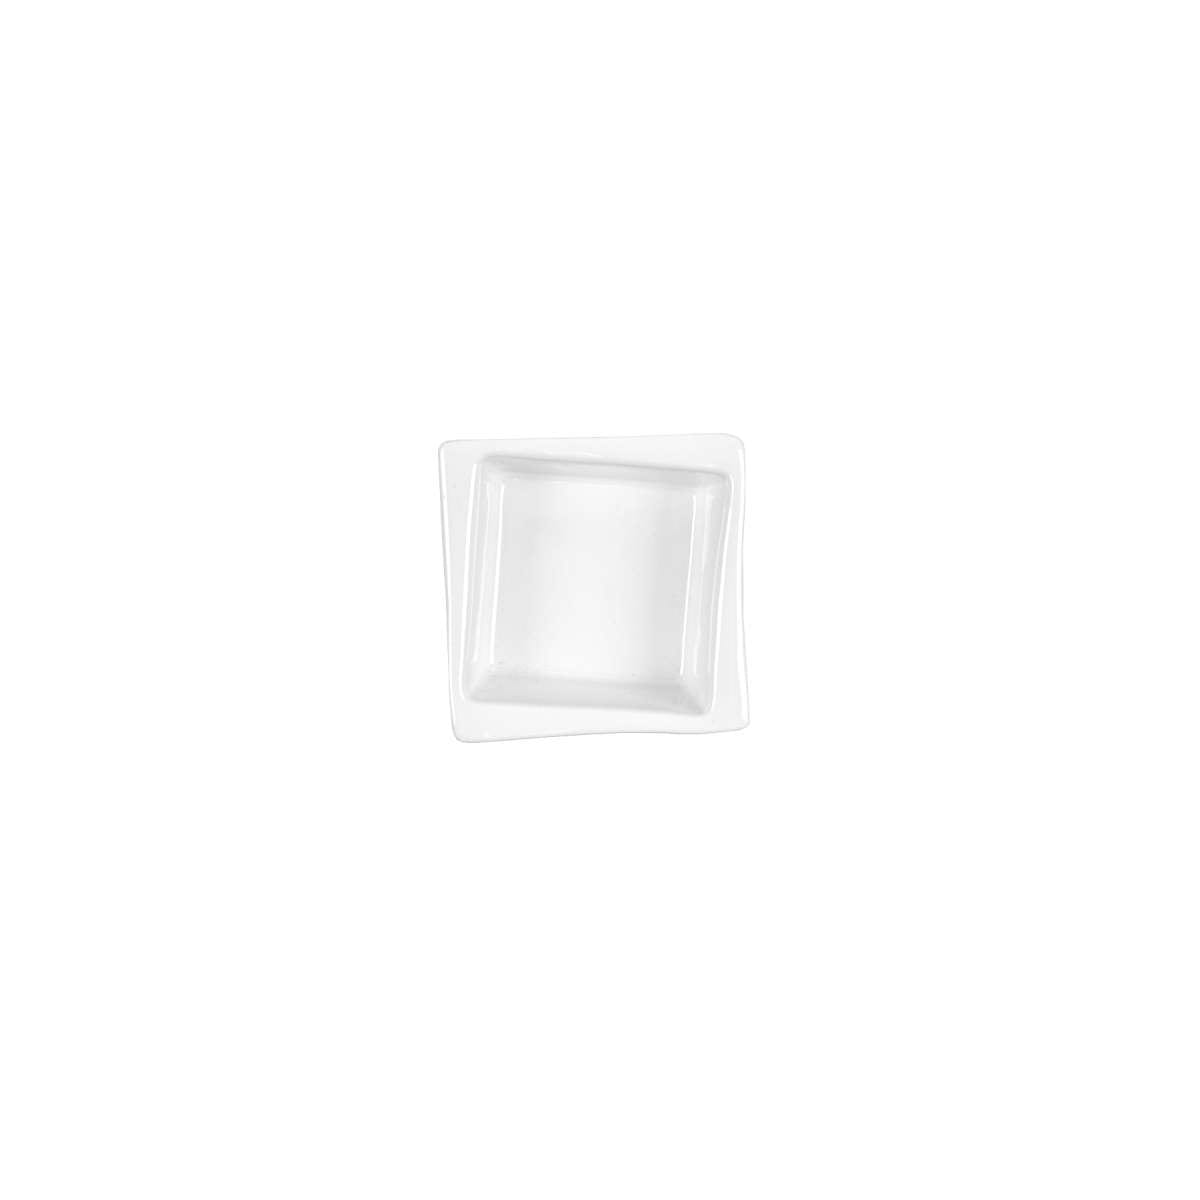 Μπωλ Πορσελάνης Τετράγωνο Λευκό Art Et Lumiere 9x9x3,5εκ. 05980 (Σετ 4 Τεμάχια) (Υλικό: Πορσελάνη, Χρώμα: Λευκό) - Art Et Lumiere - lumiere_05980 138413